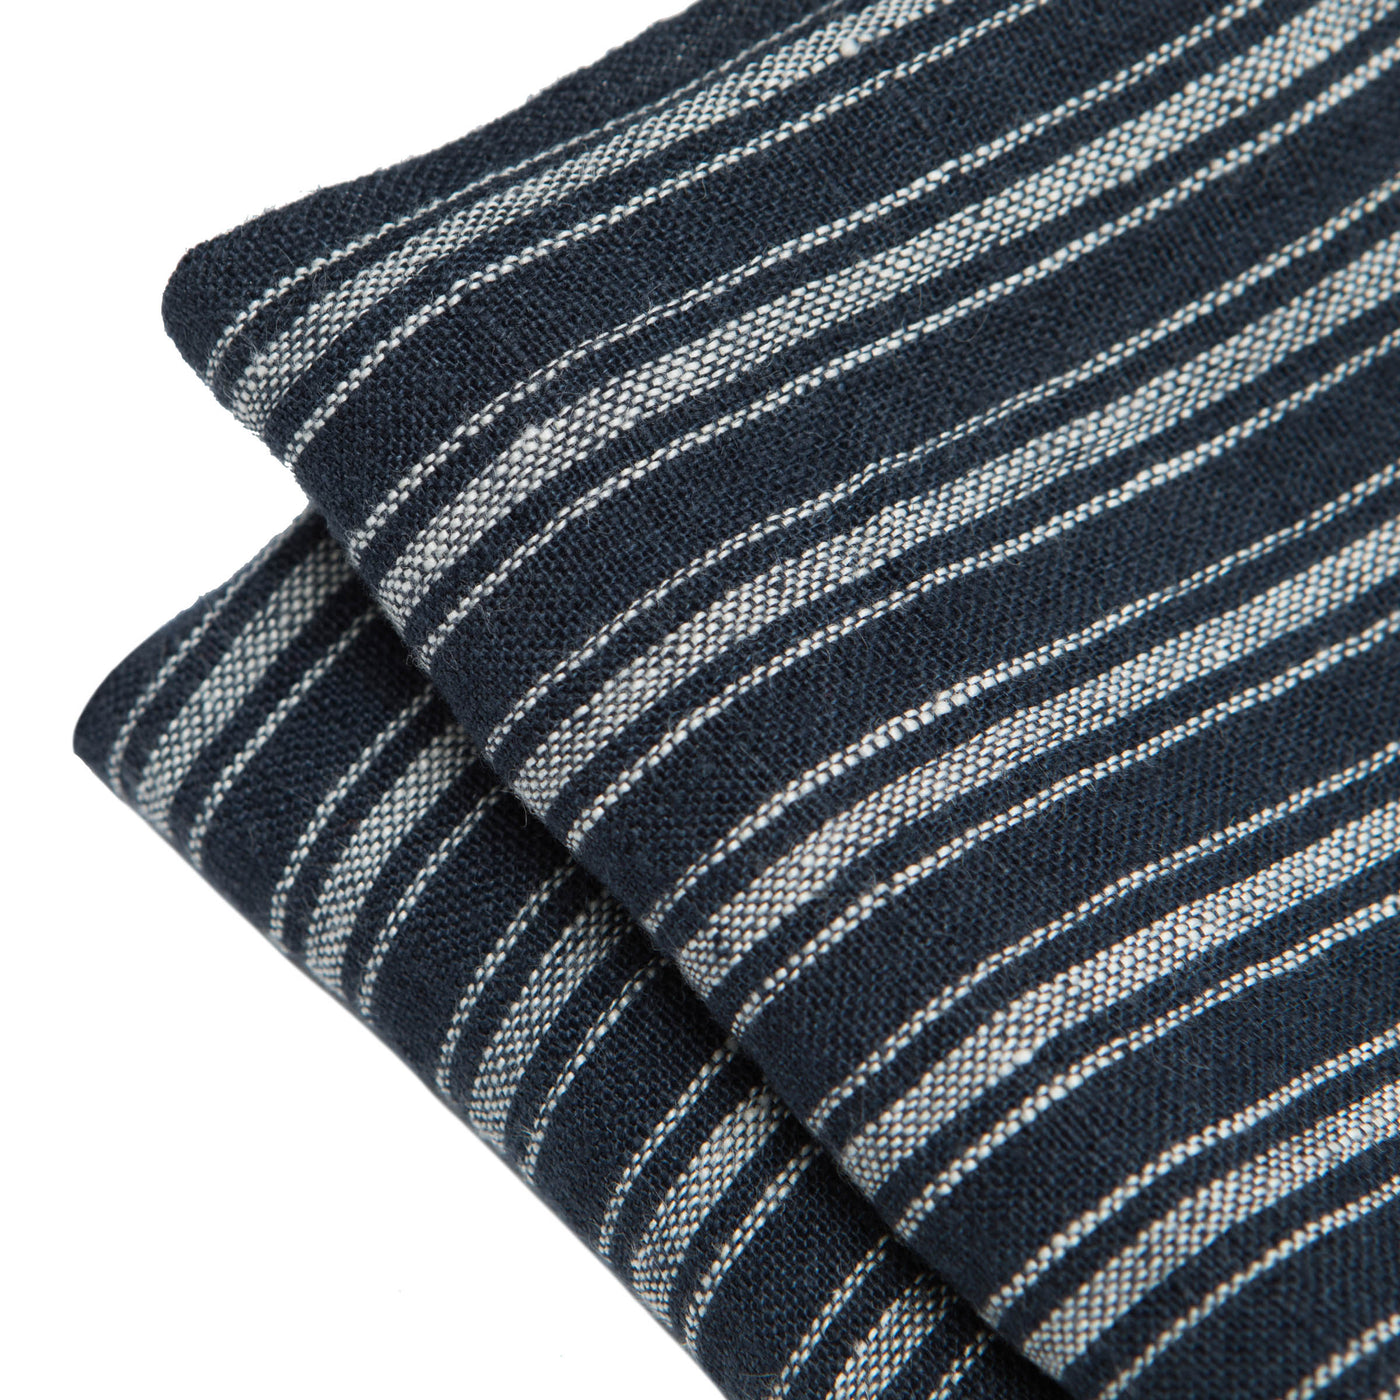 Boat Stripe Linen Kitchen Towels Indigo & White, Set of 2